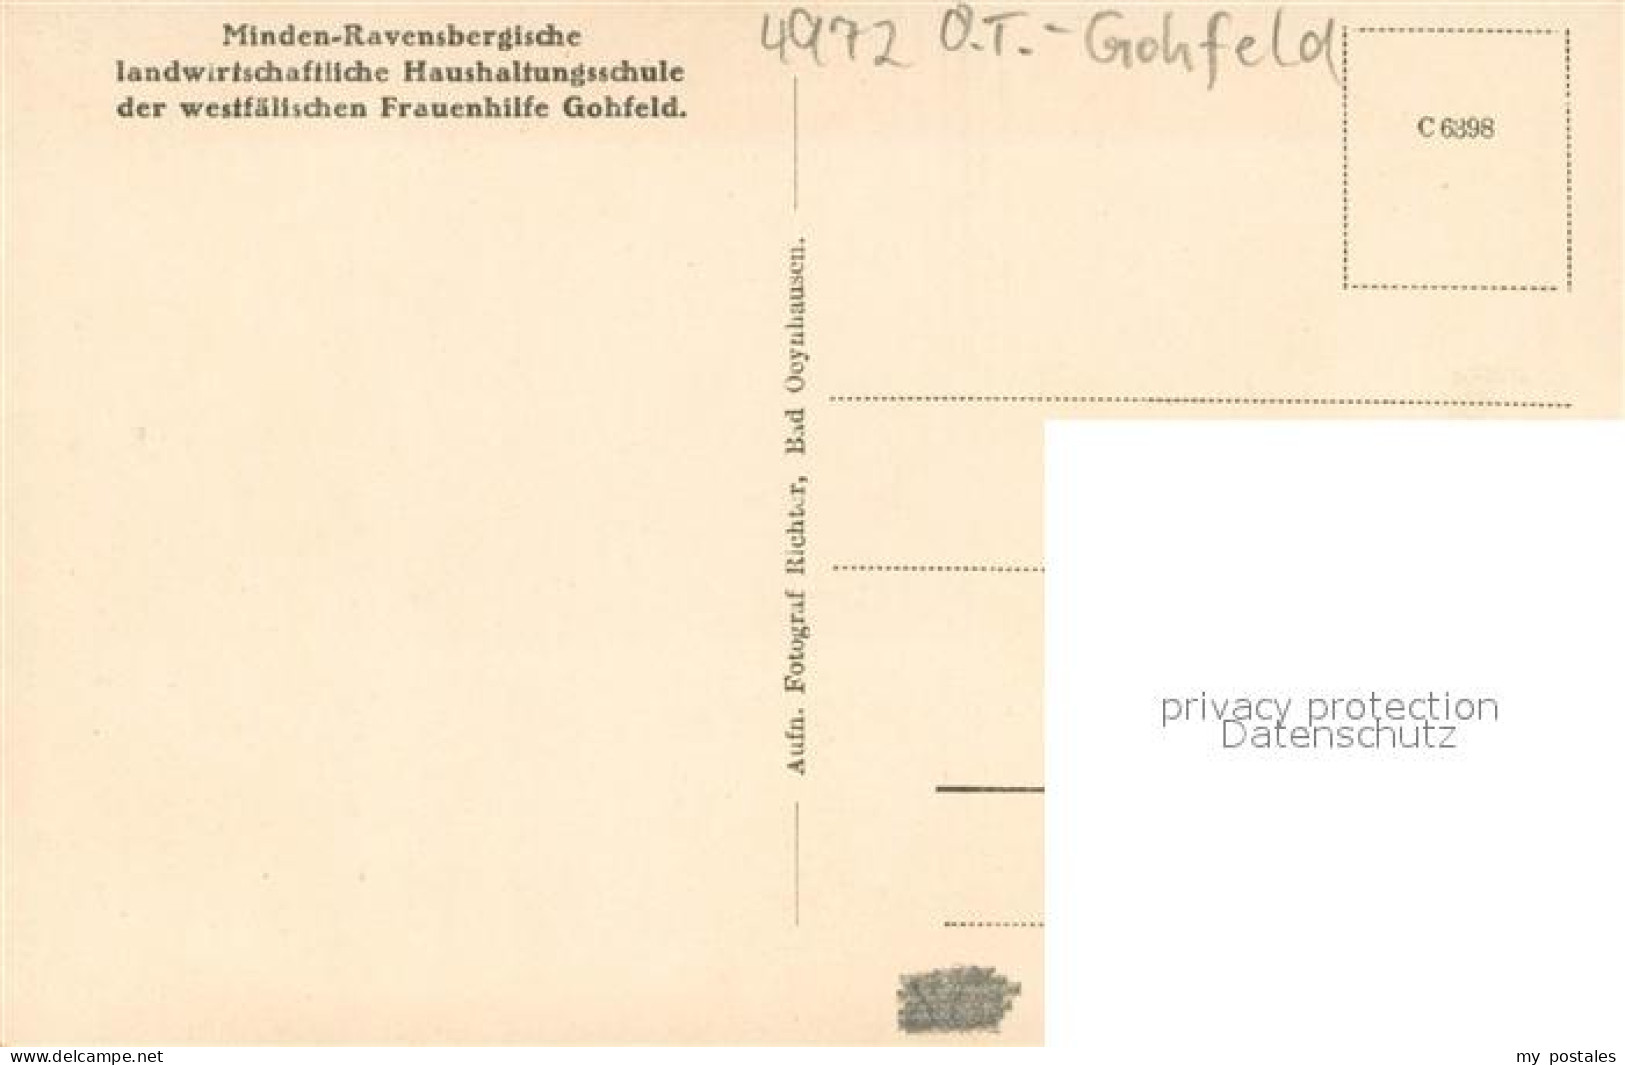 73703999 Gohfeld Herford Minden-Ravensbergische Landwirtschaftliche Haushaltungs - A Identifier